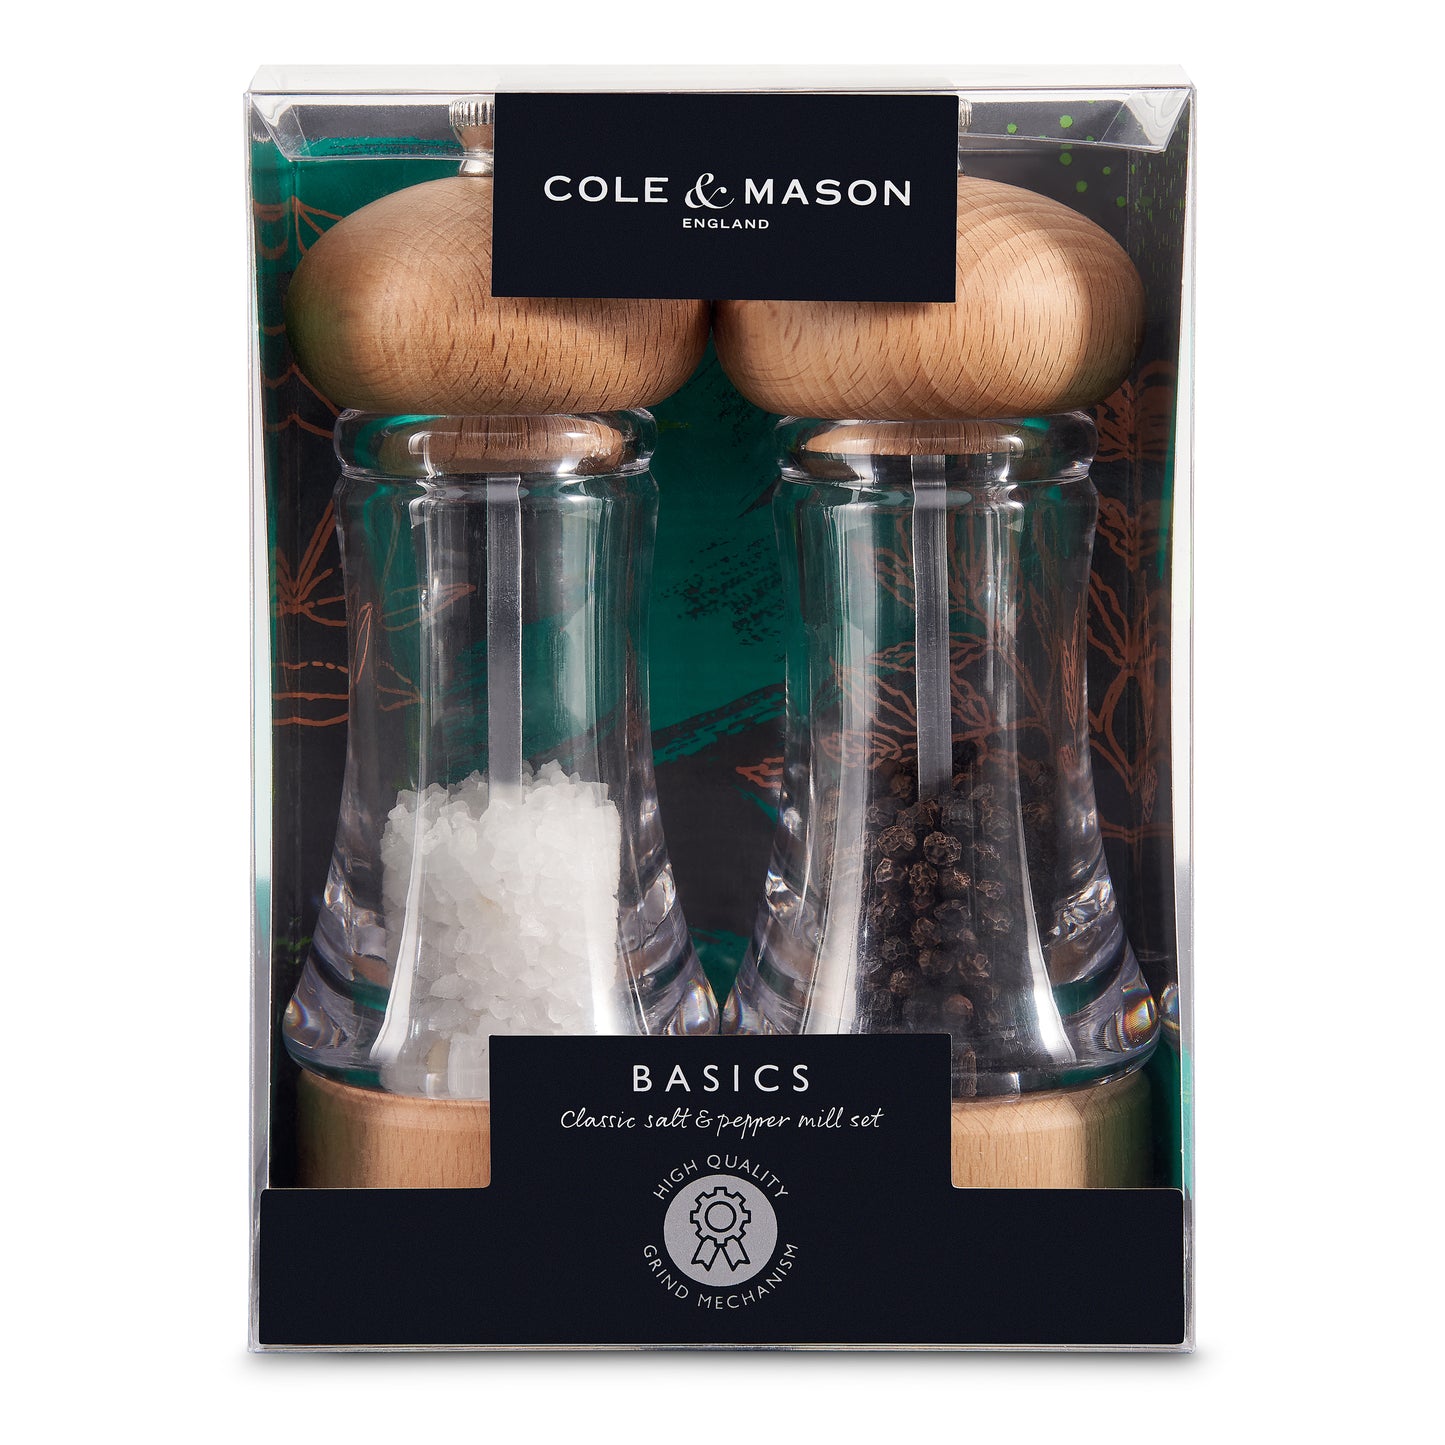 Cole & Mason Basics Salt & Pepper Gift Set - Chefs Kiss